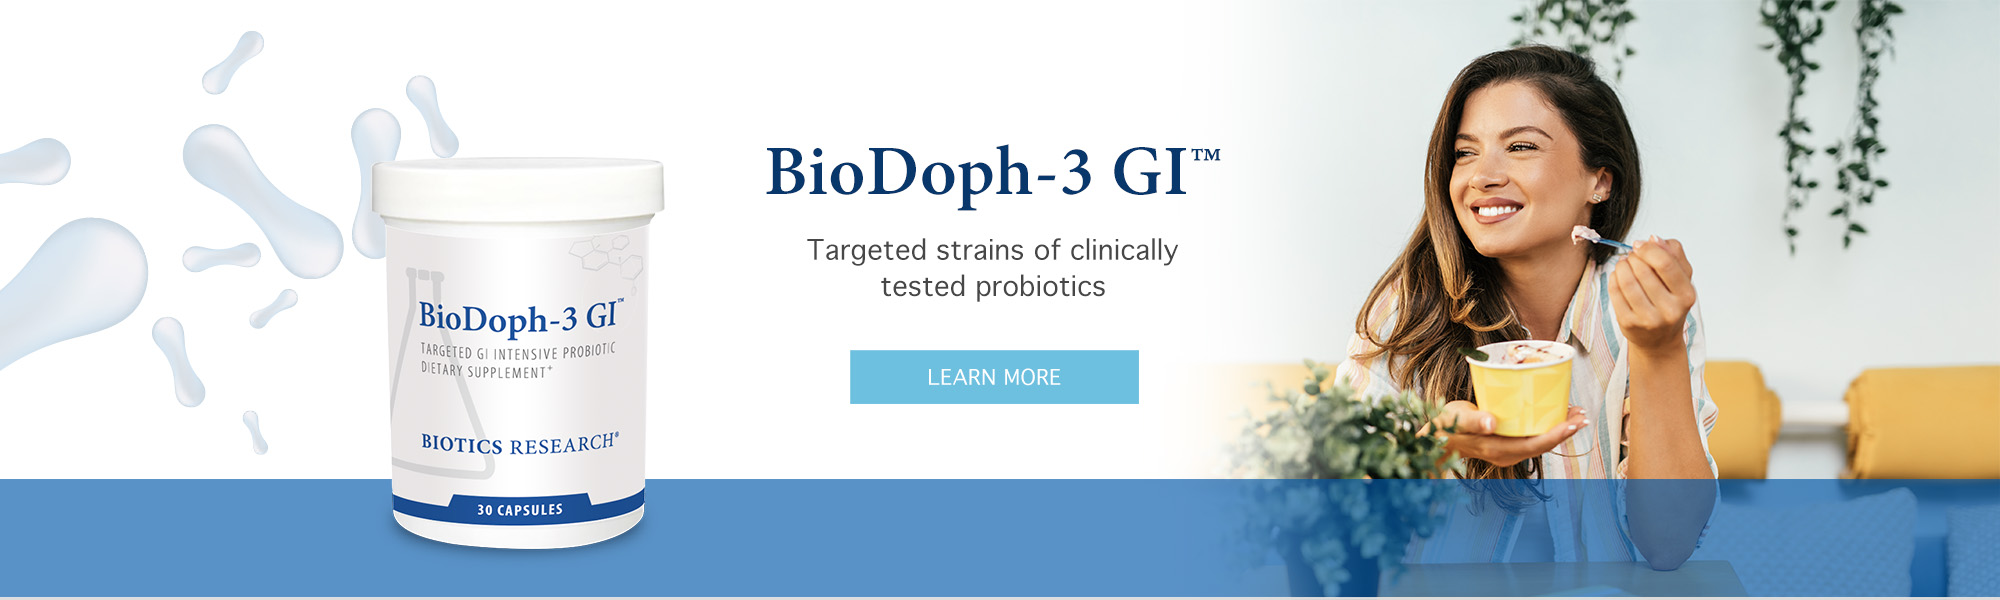 BioDoph-3GI_Banner